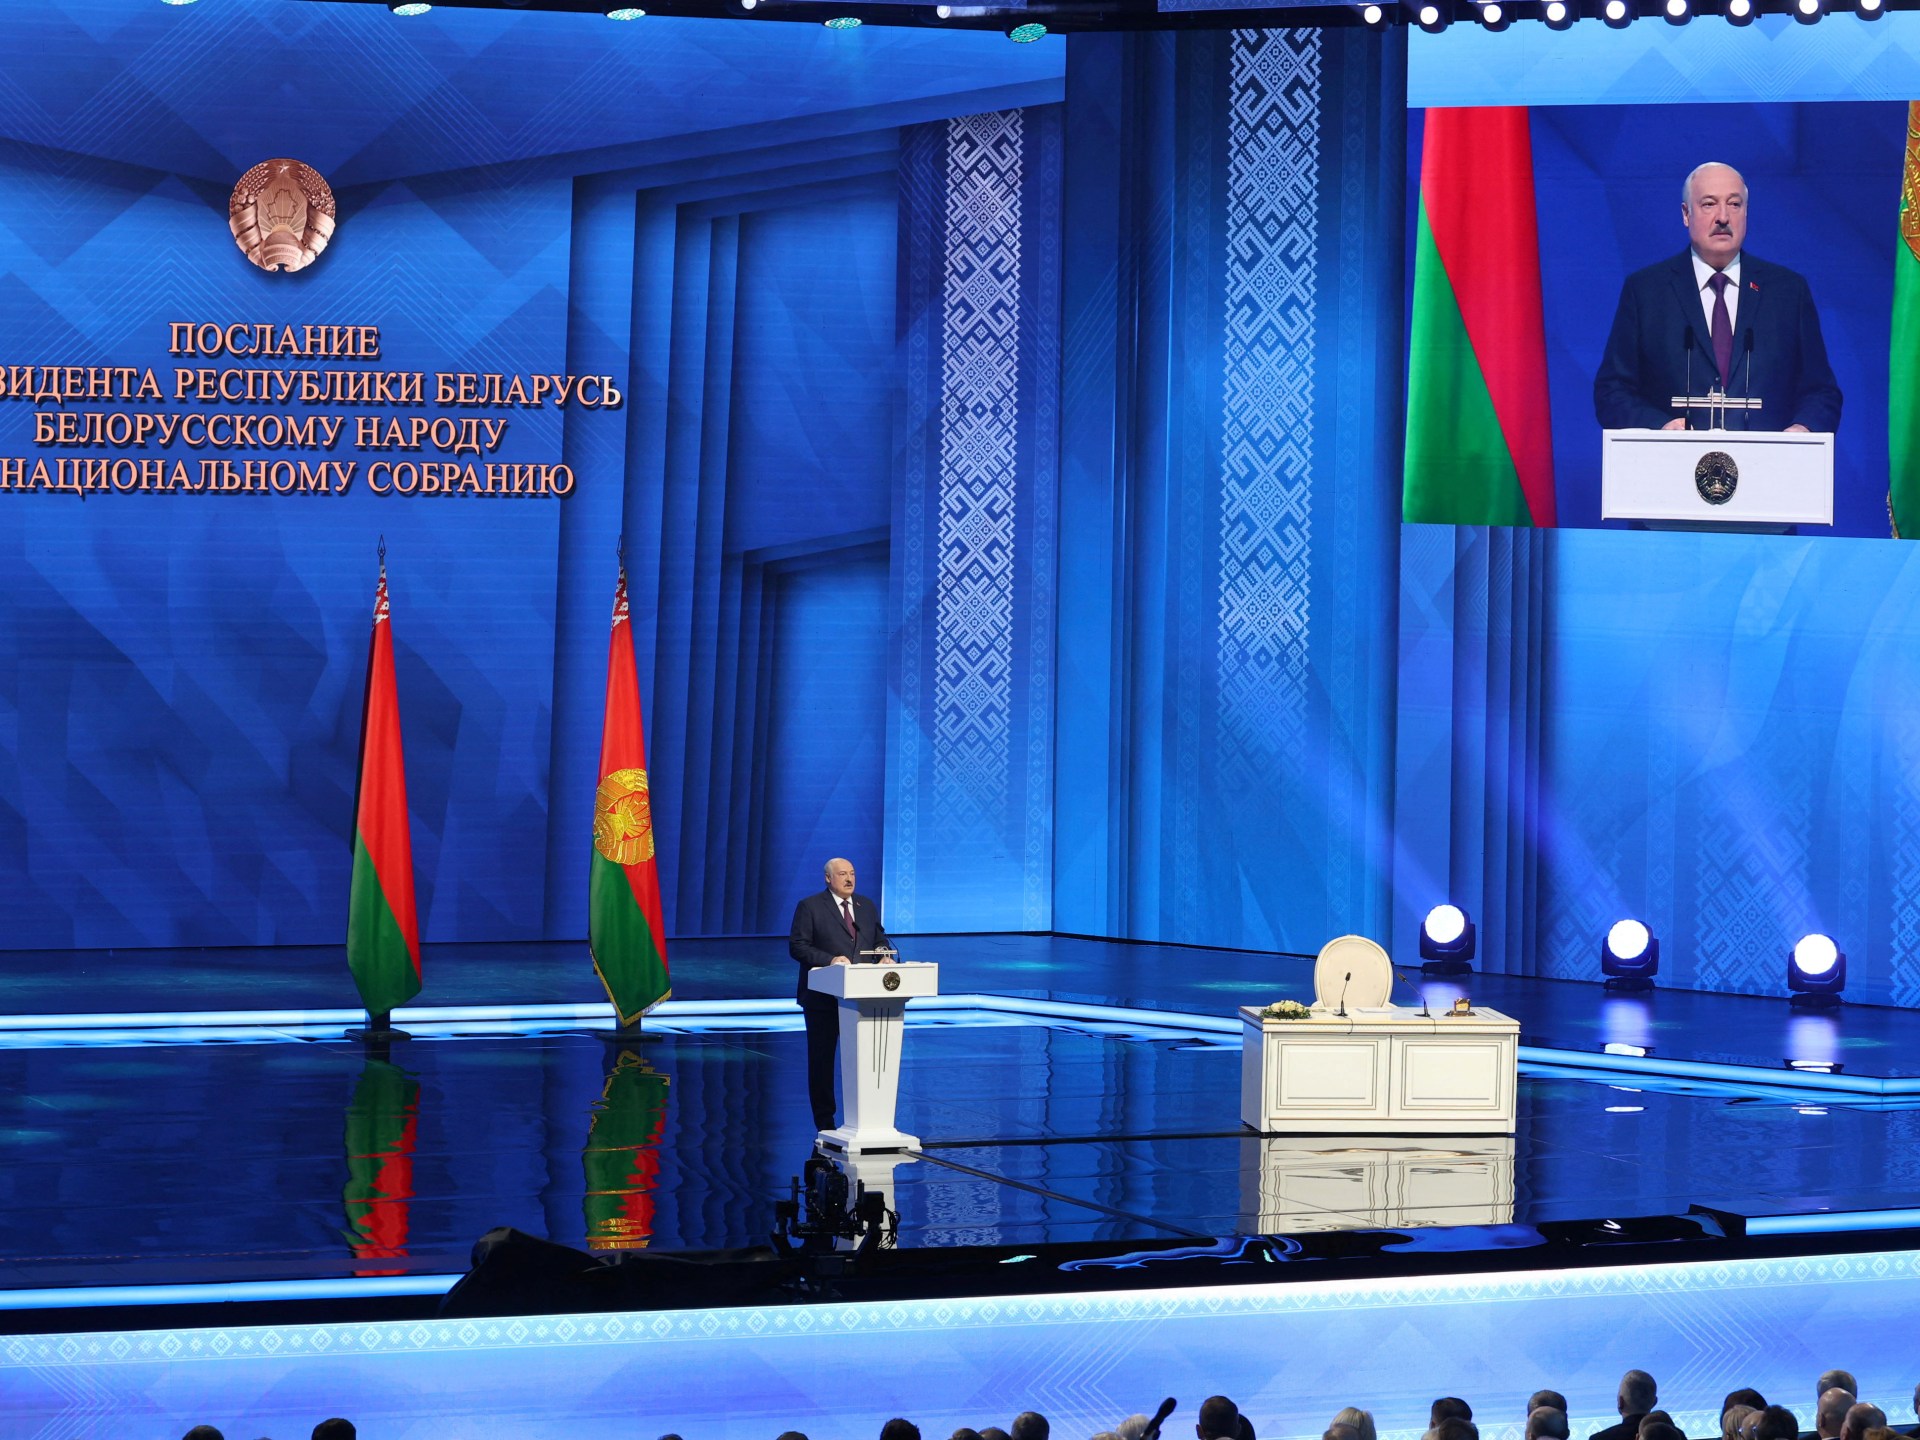 Belarus dapat menjadi tuan rumah senjata nuklir strategis, kata Lukashenko |  Berita